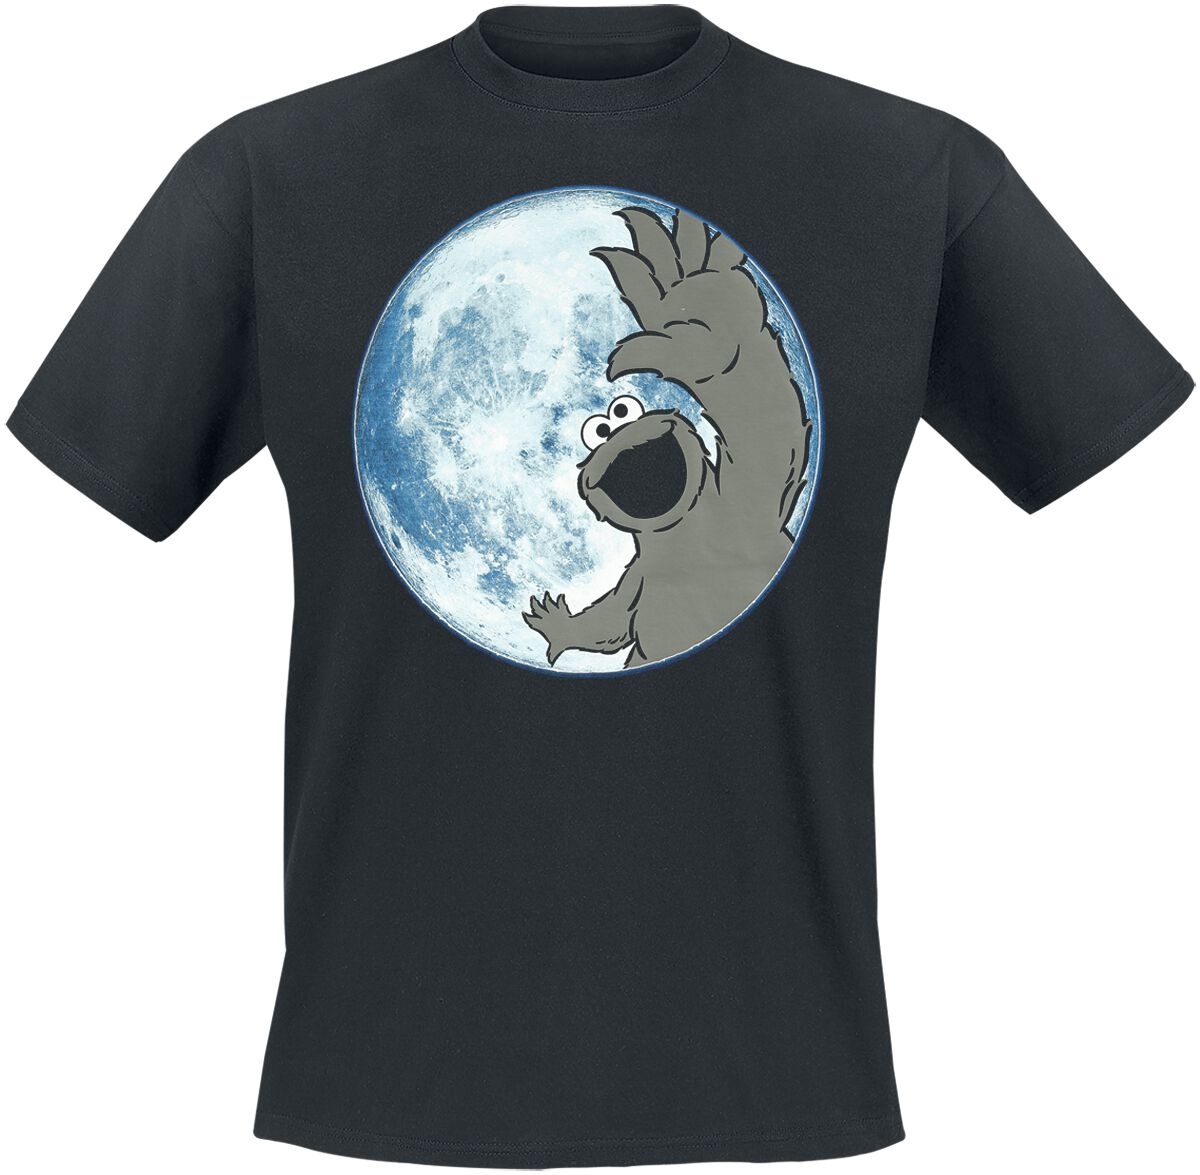 Sesamstraße T-Shirt - Moon - Cookie Monster - S bis 3XL - für Männer - Größe L - schwarz  - EMP exklusives Merchandise!